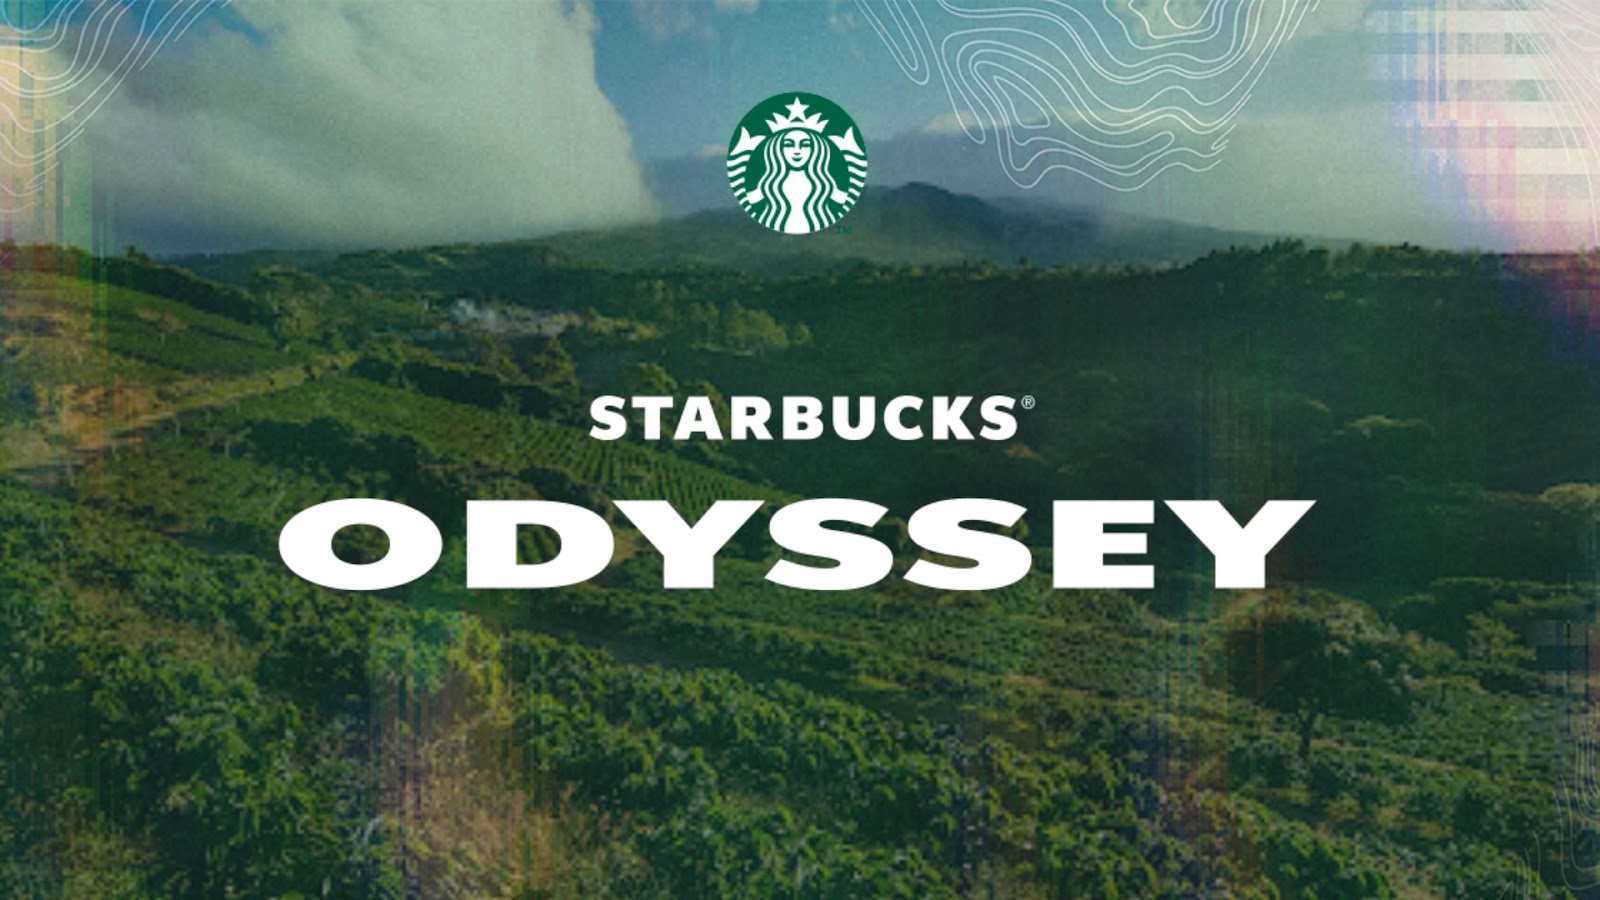 Starbucks NFT Odyssey Program Comes to a Close